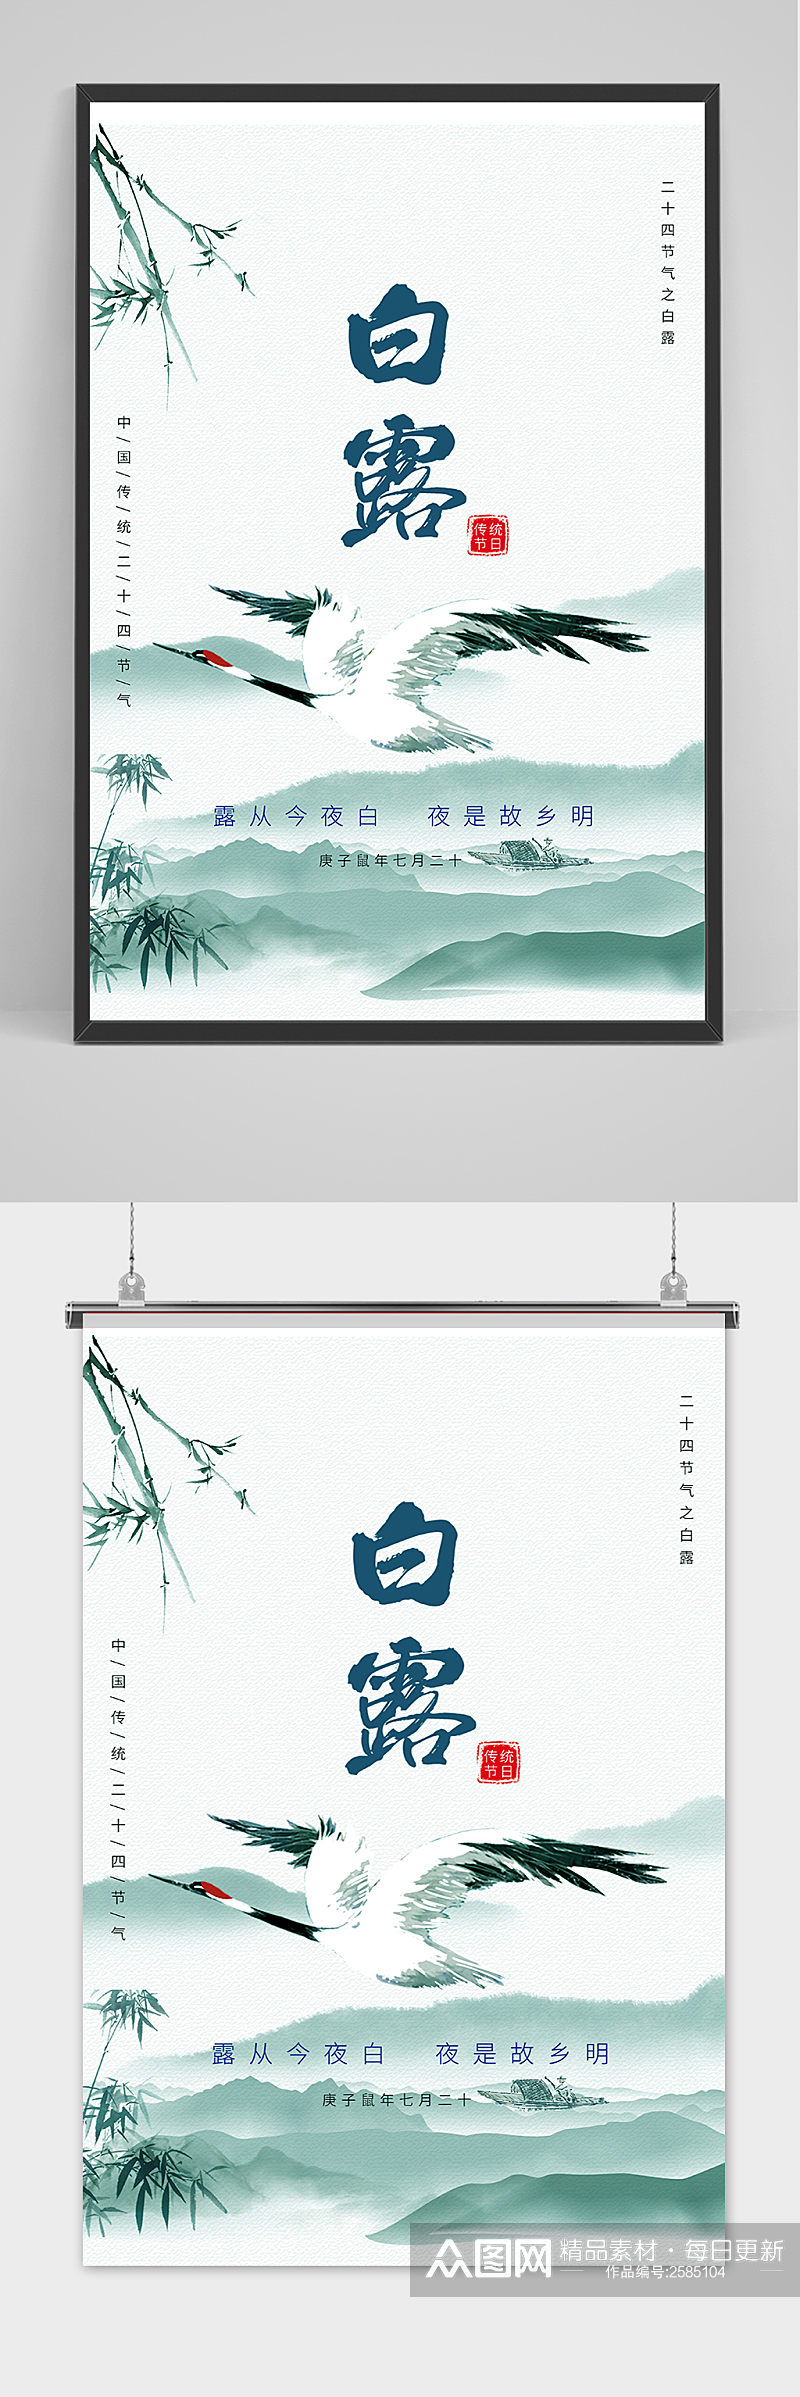 手绘中国传统24节气白露节海报素材